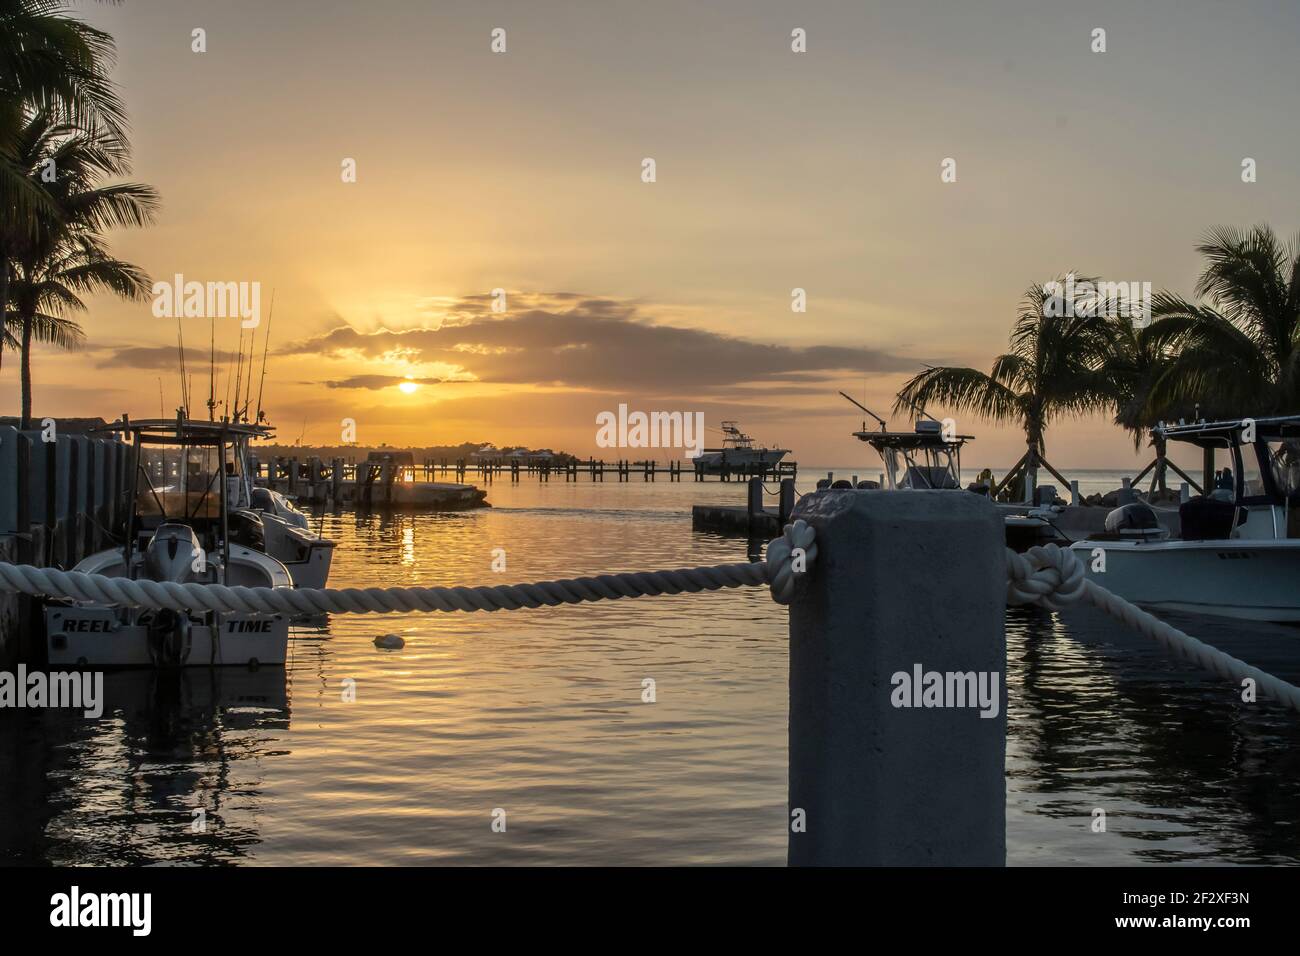 Florida Keys Sunset: Viaggia verso il Golfo del Messico lungo la costa della Florida, goditi la tranquillità o questa popolare destinazione turistica sulla spiaggia Foto Stock